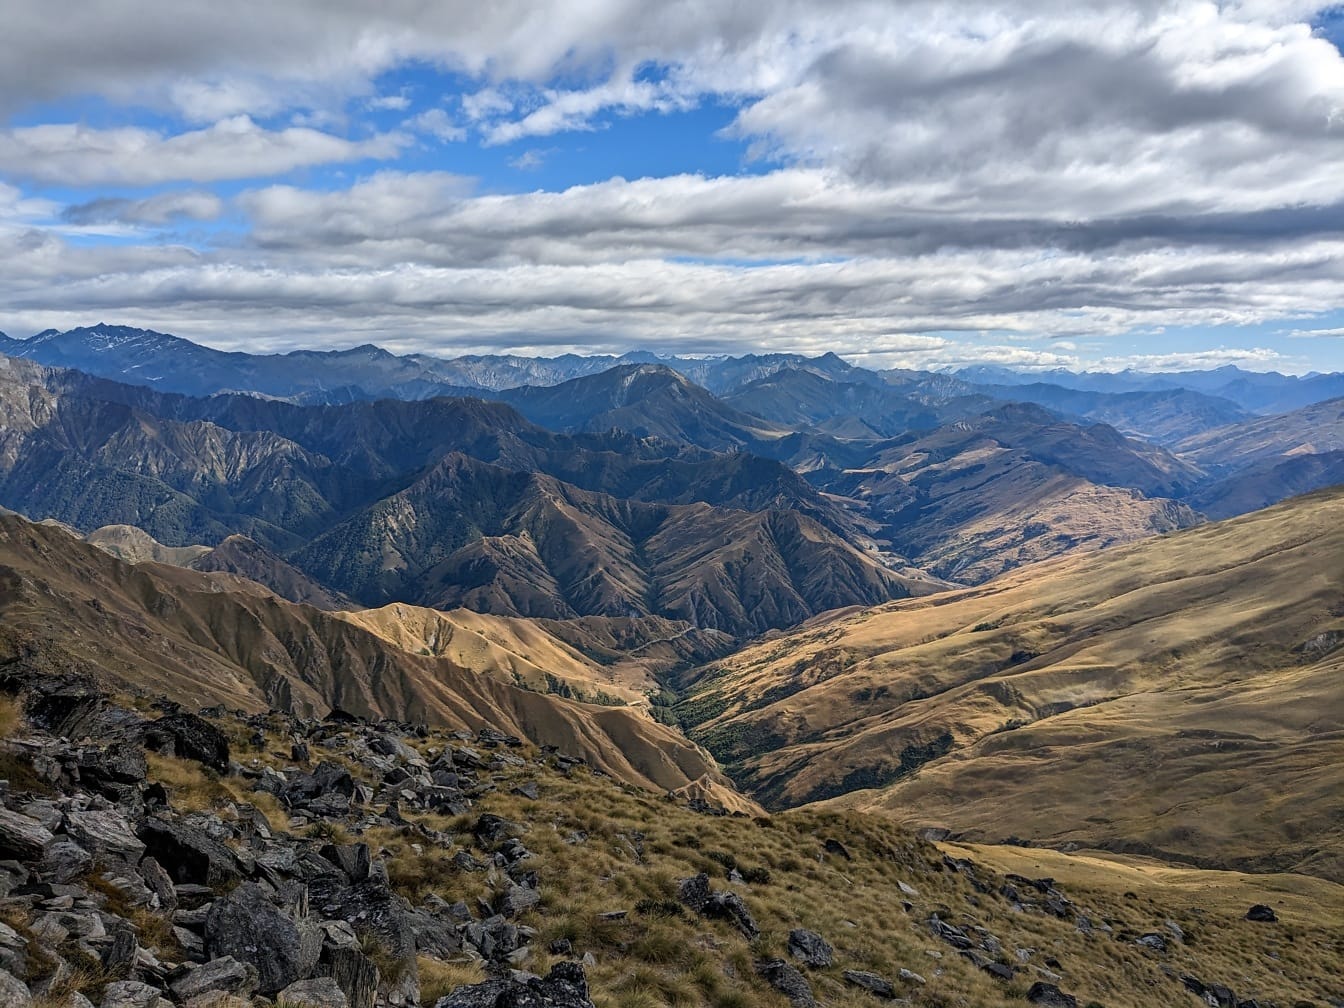 Veličanstvena panorama planinskog vrha i doline